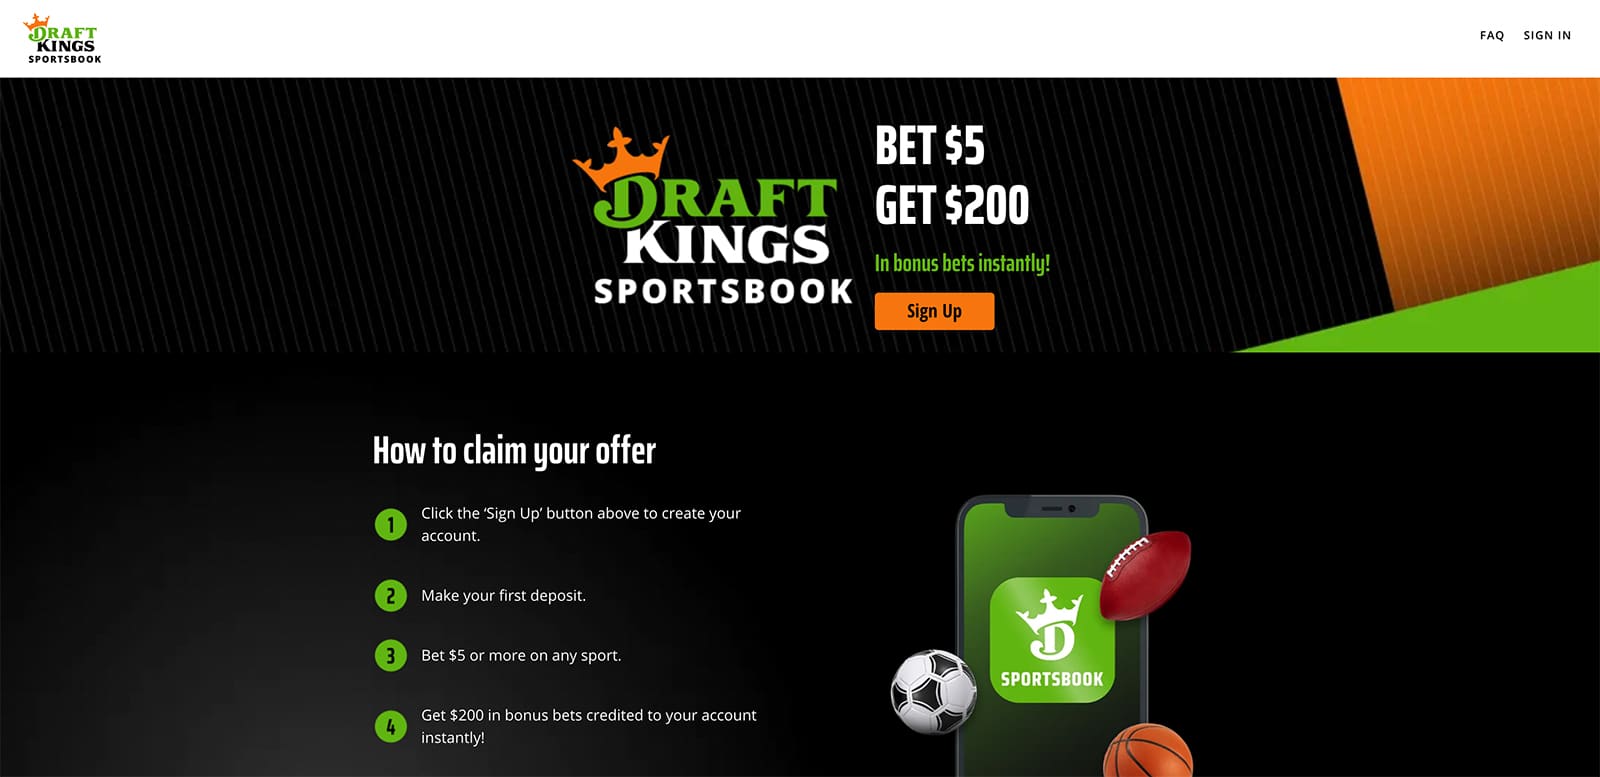 DraftKings Promo Code: Bet $5, Get $200 Instant Sportsbook Bonus